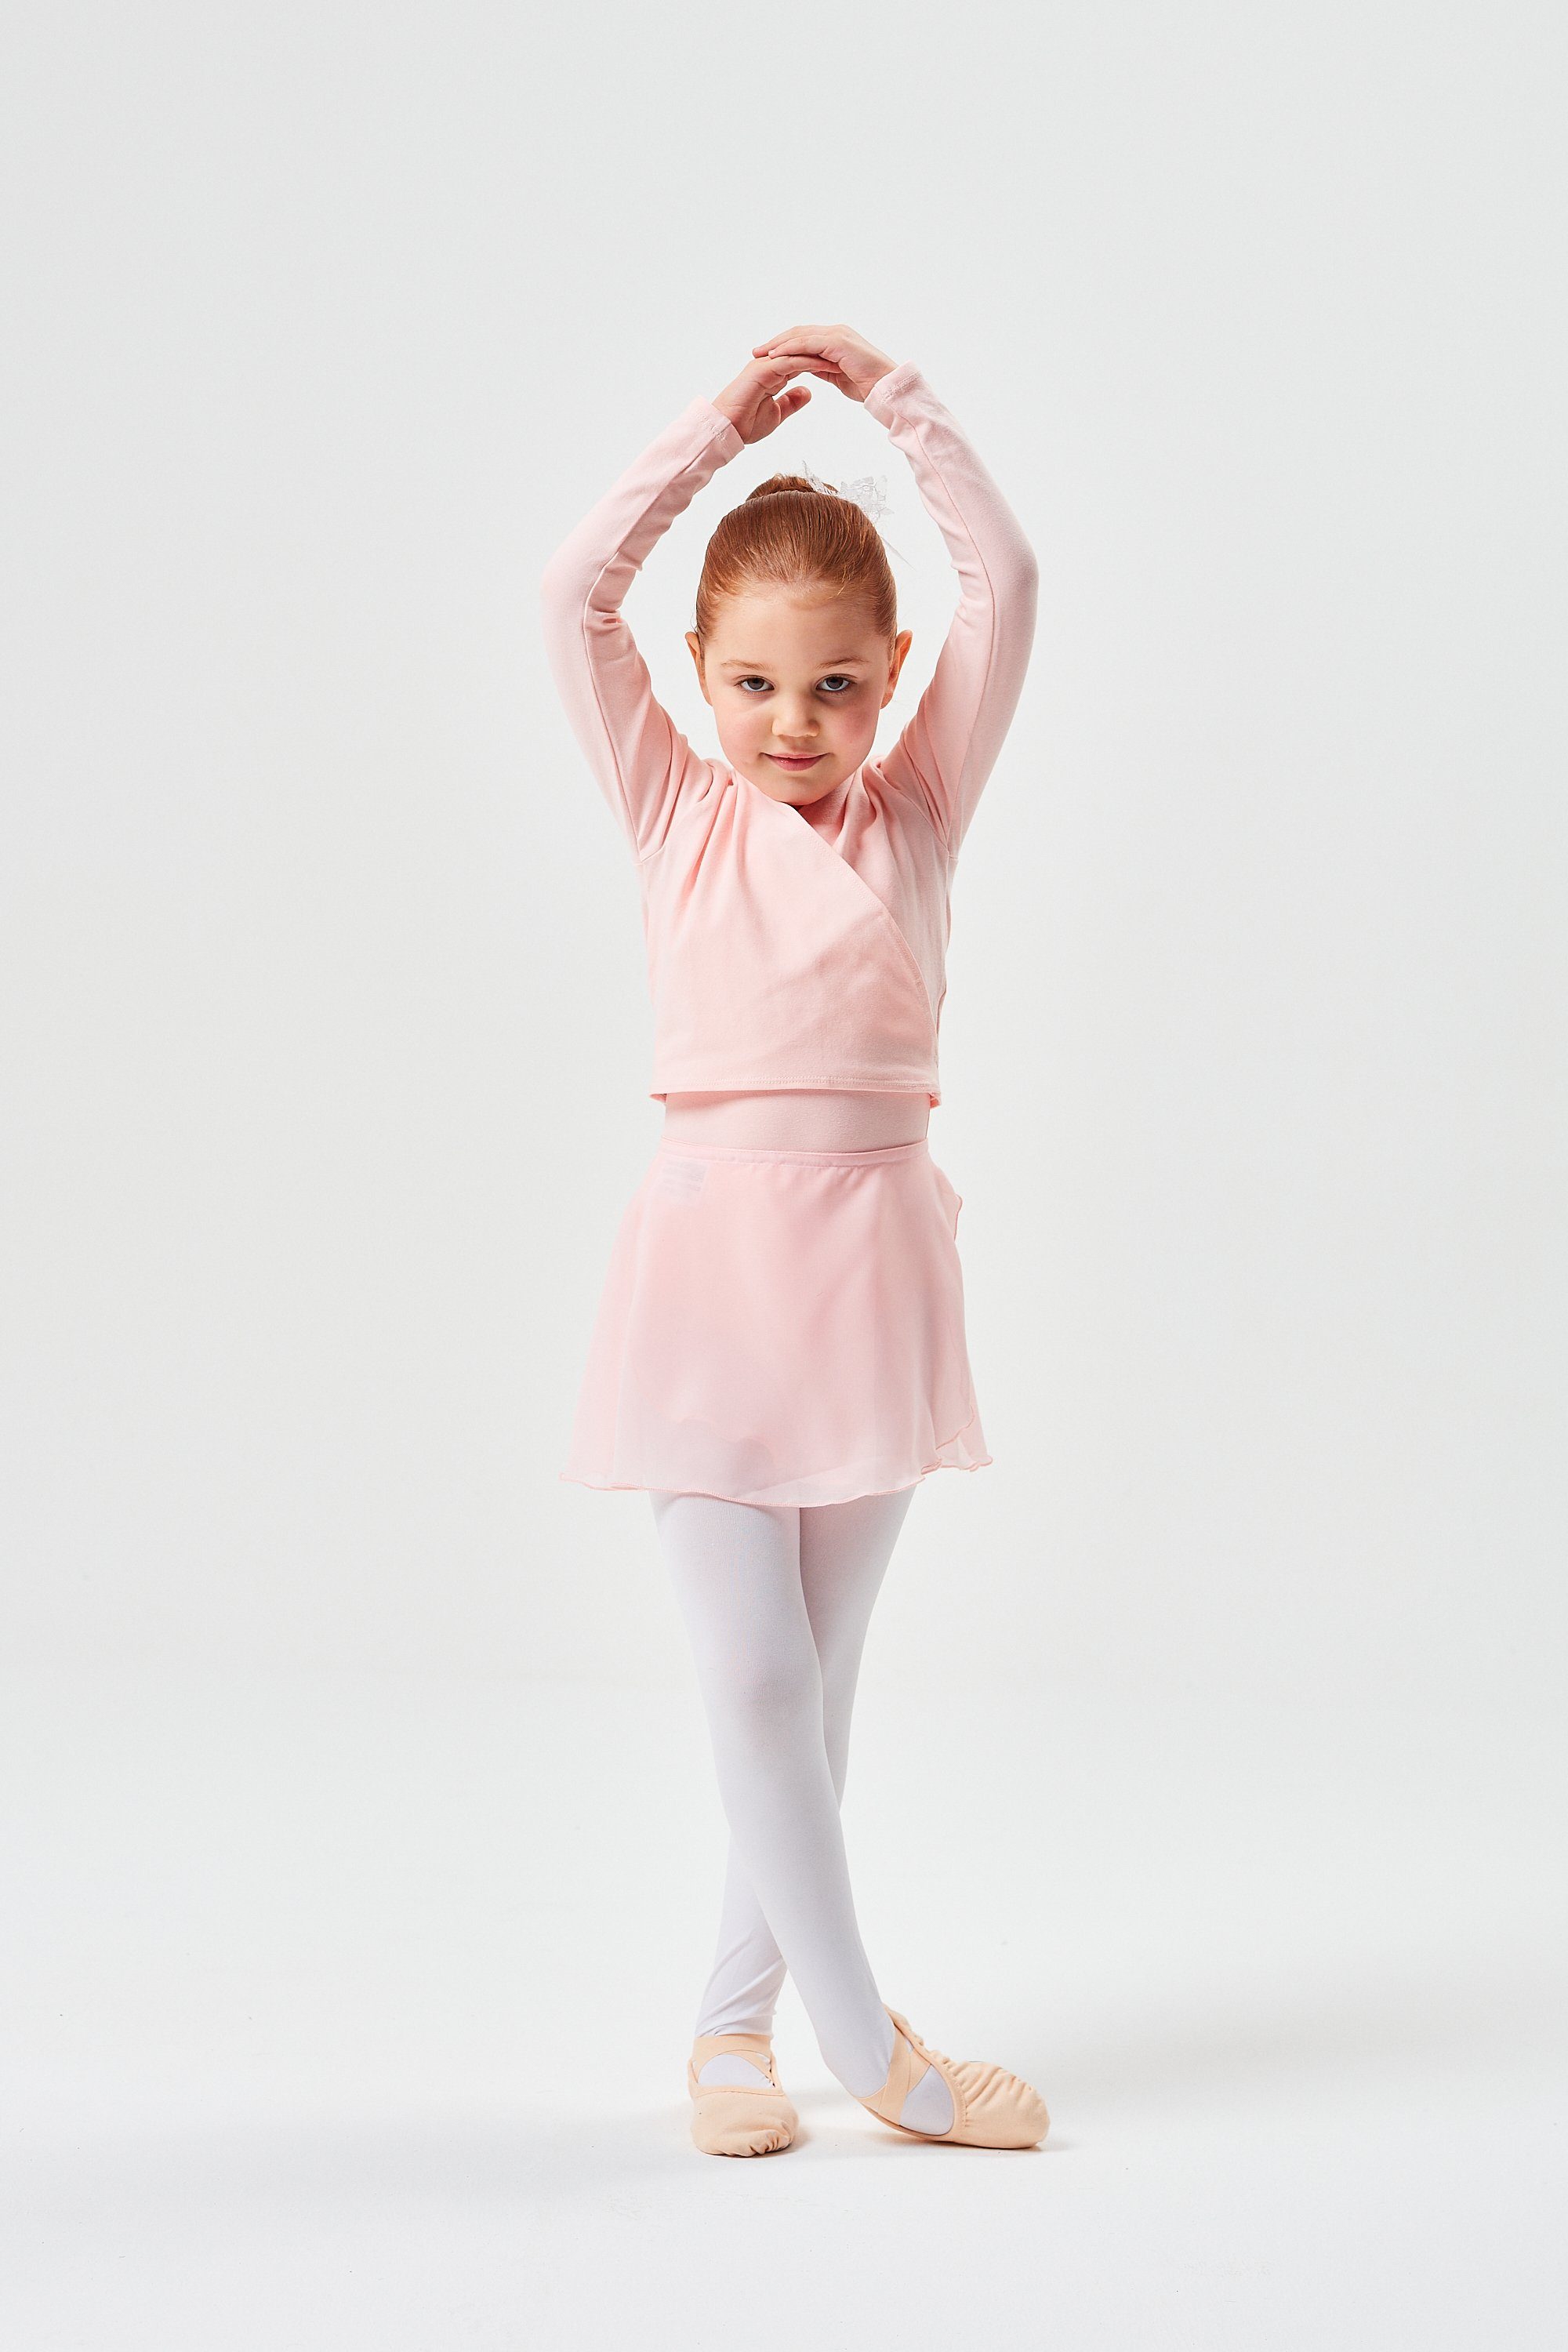 tanzmuster Sweatjacke Ballett Wickelacke Mandy aus weicher Baumwolle ärmelloser Ballettbody aus weichem Baumwollmischgewebe ballett-rosa